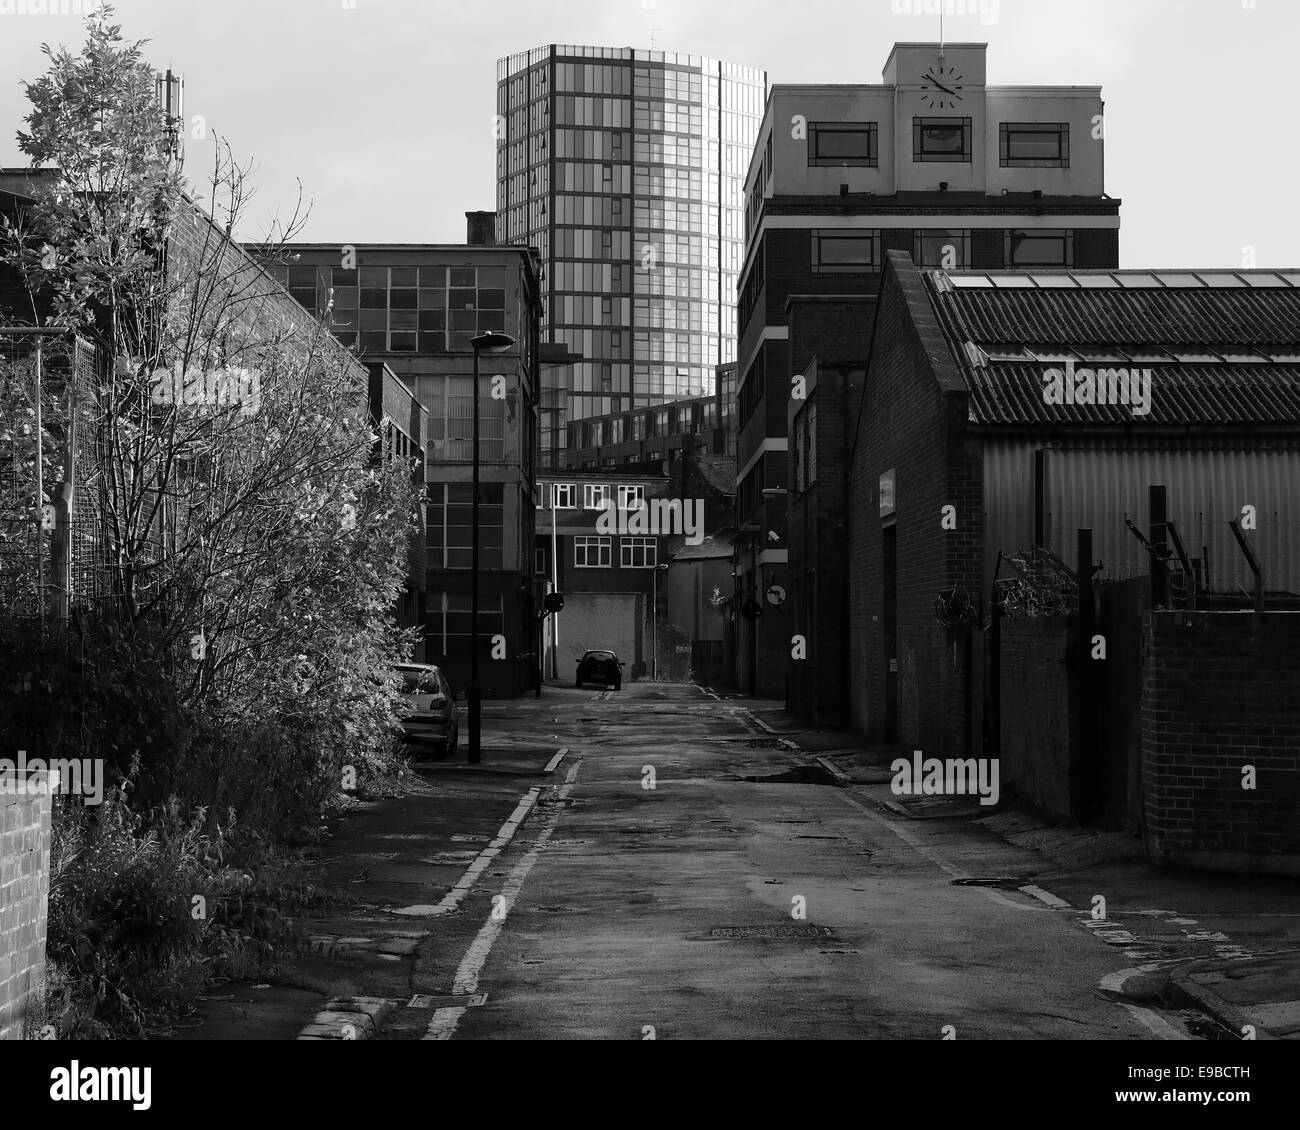 Anciennes usines sur un retour de Sheffield, à la rue vers un immeuble de bureaux moderne dans la distance Banque D'Images